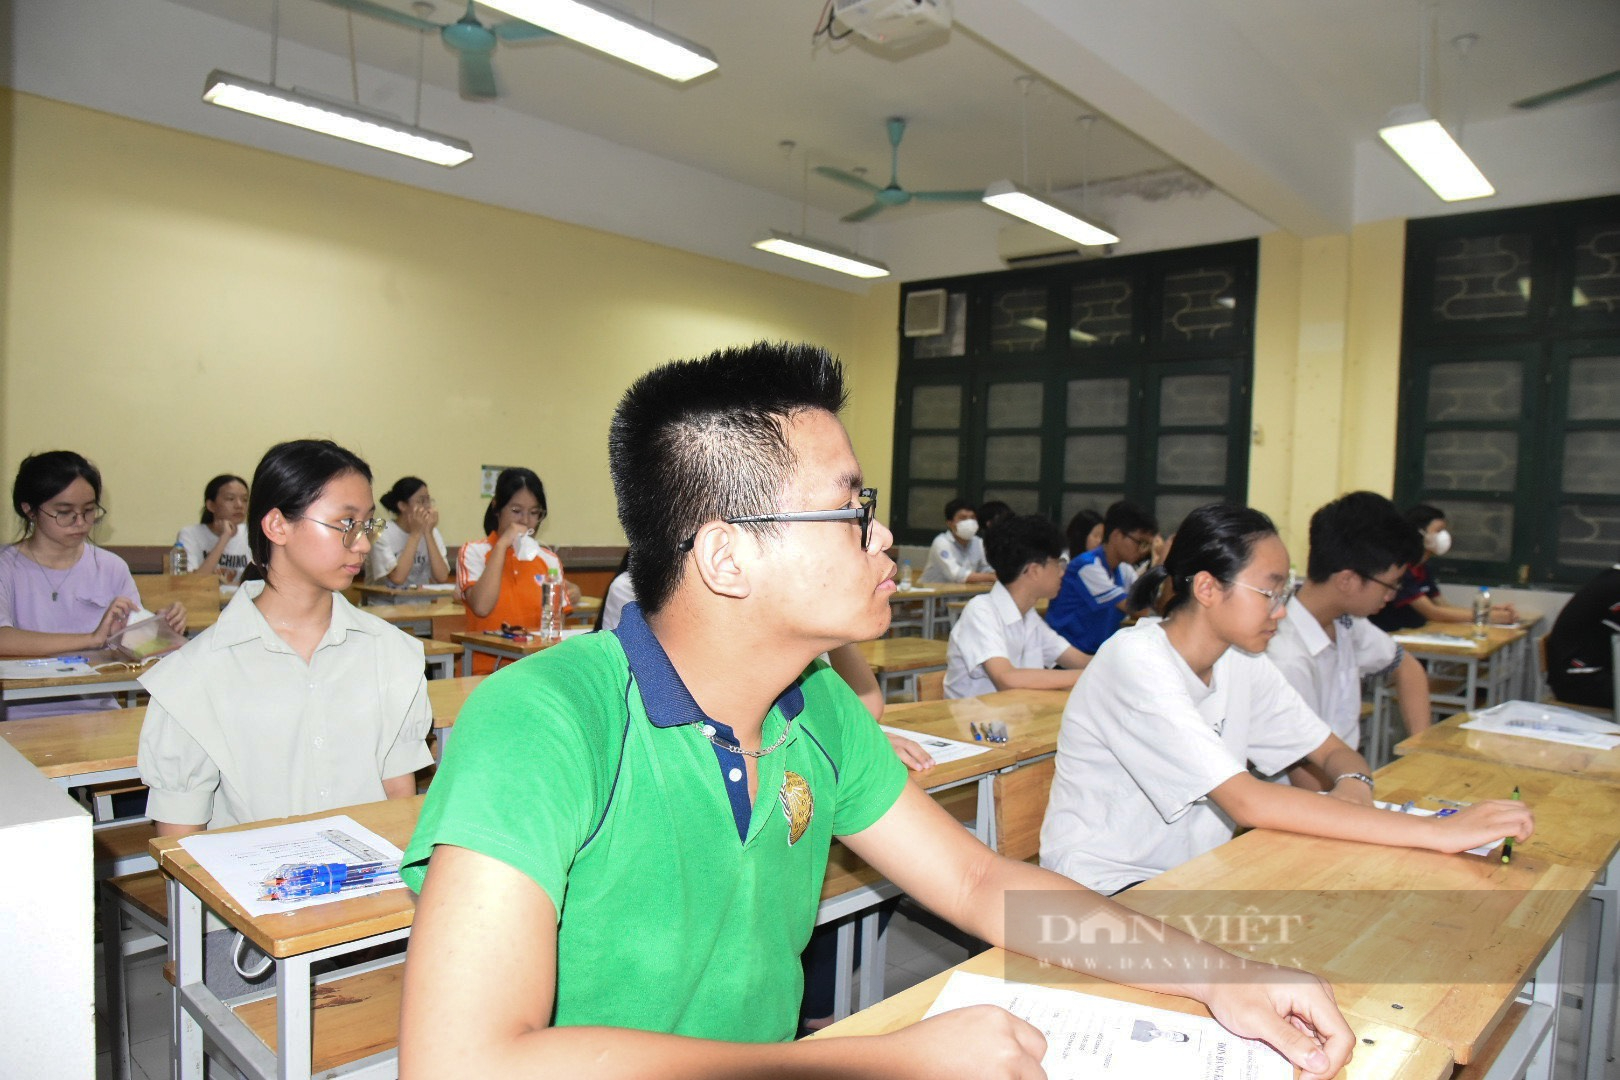 Trường cuối cùng ở Hà Nội tổ chức thi lớp 10: Tăng chỉ tiêu nhưng tỉ lệ chọi vẫn cao "chóng mặt"- Ảnh 5.